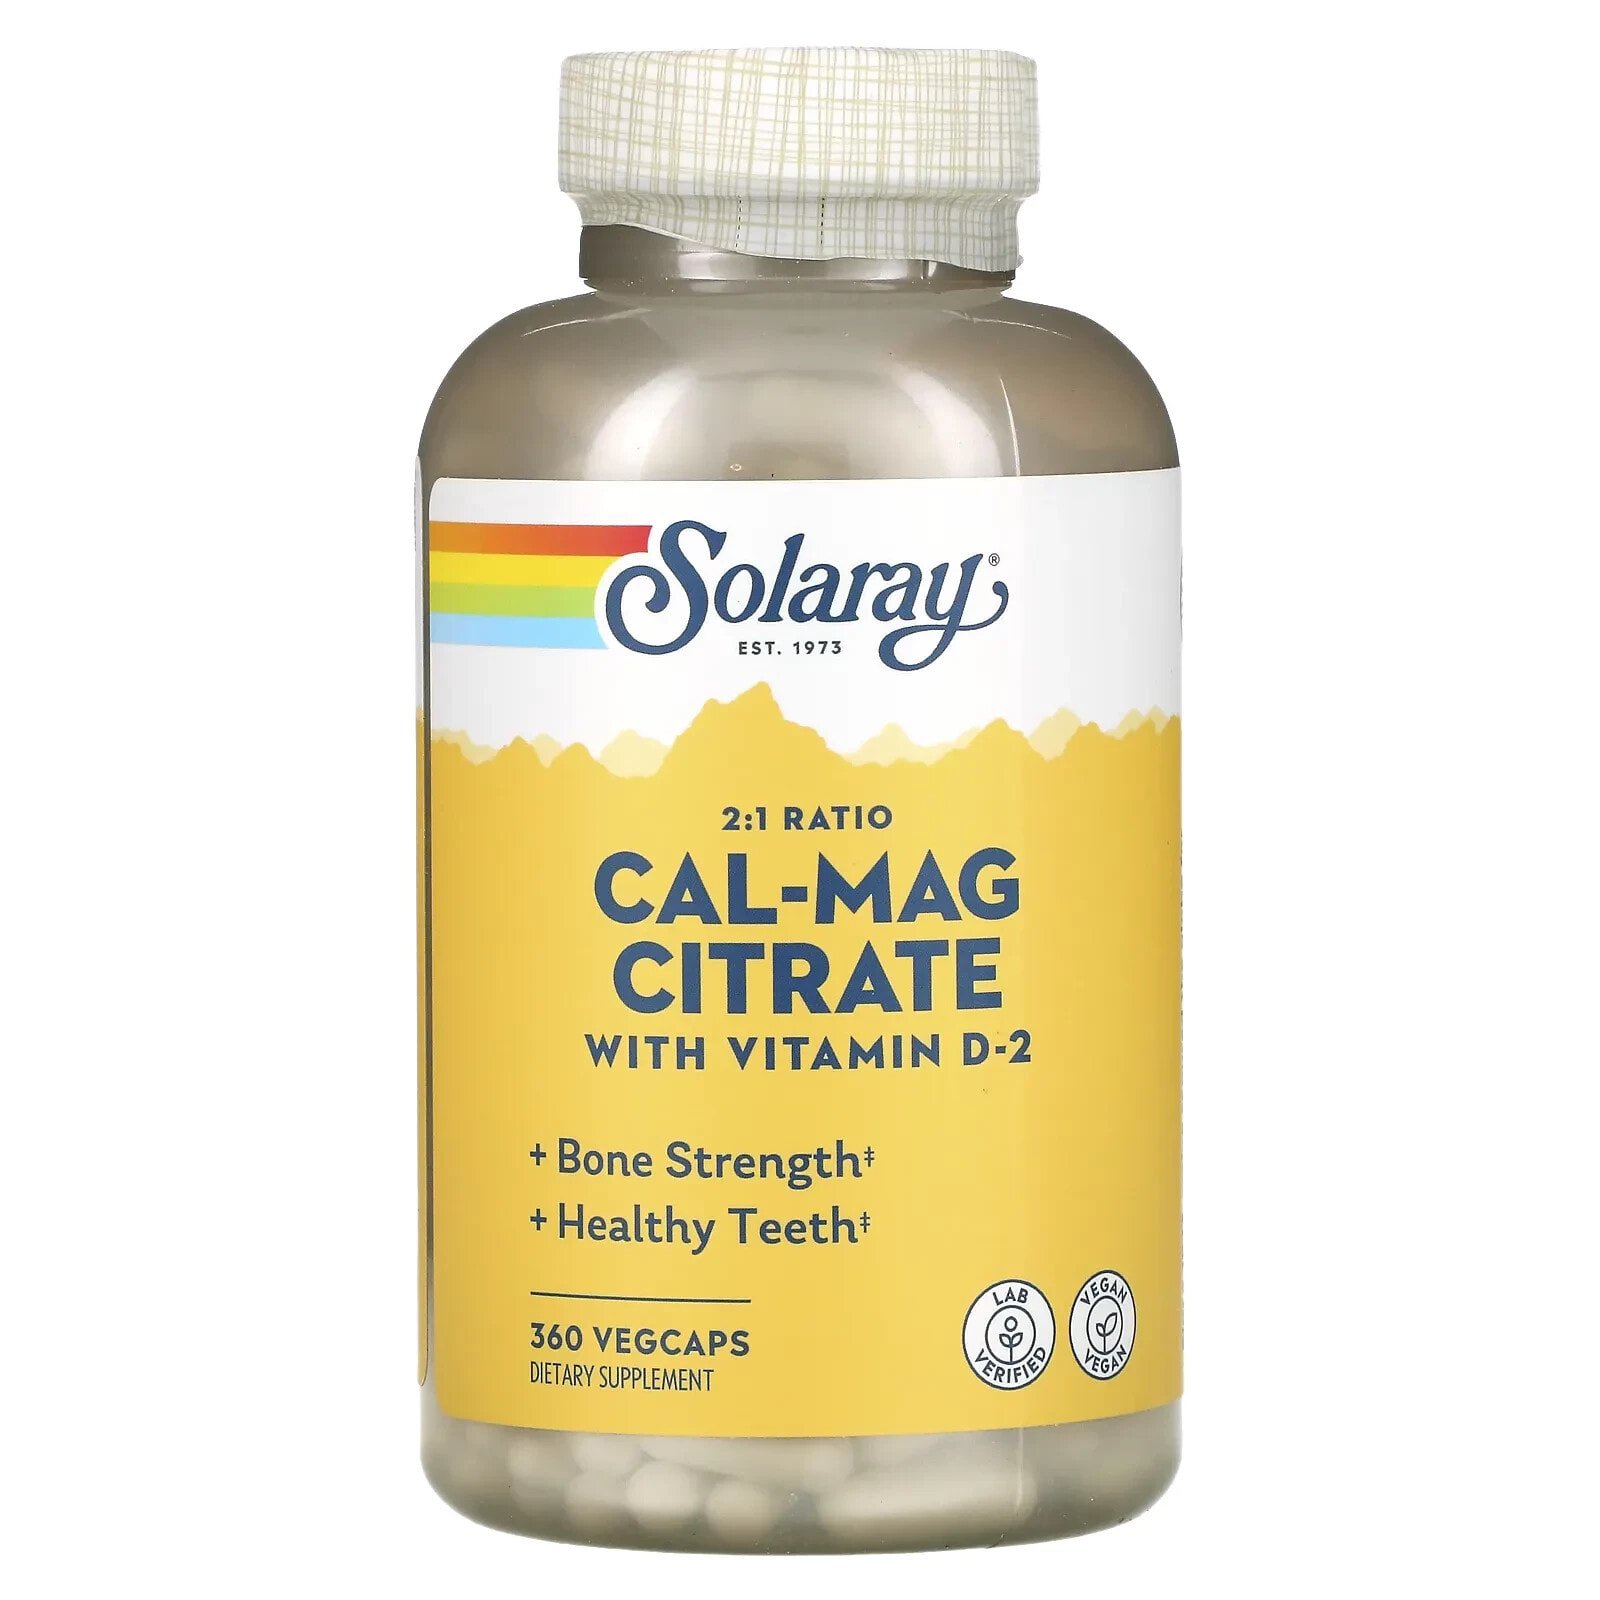 Solaray, Цитрат кальция и магния, 400 МЕ витамина D, 180 вегетарианских капсул